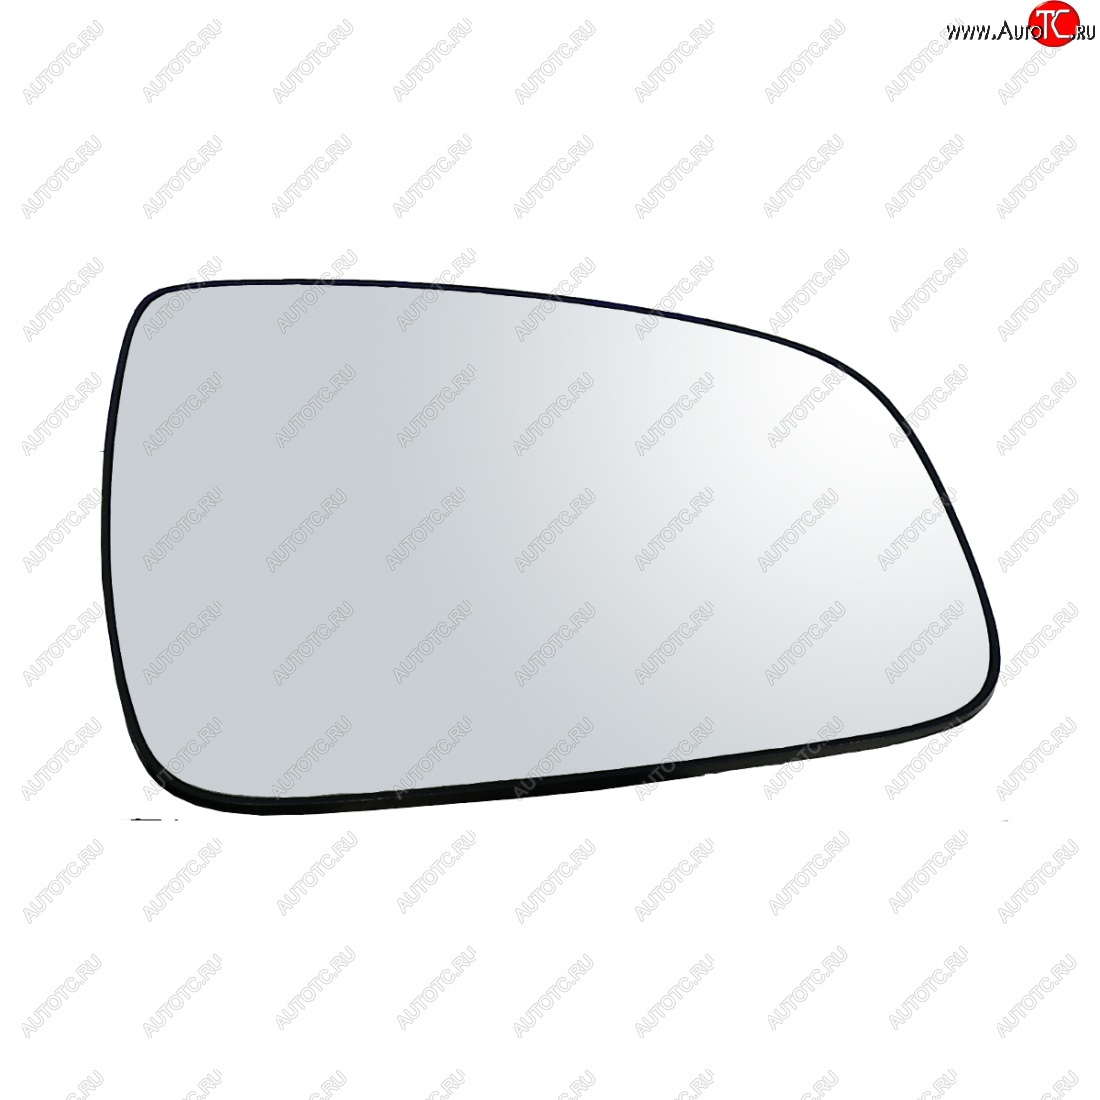 289 р. Правое зеркальное полотно AutoBlik2 Renault Duster HS дорестайлинг (2010-2015) (без антибликового покрытия)